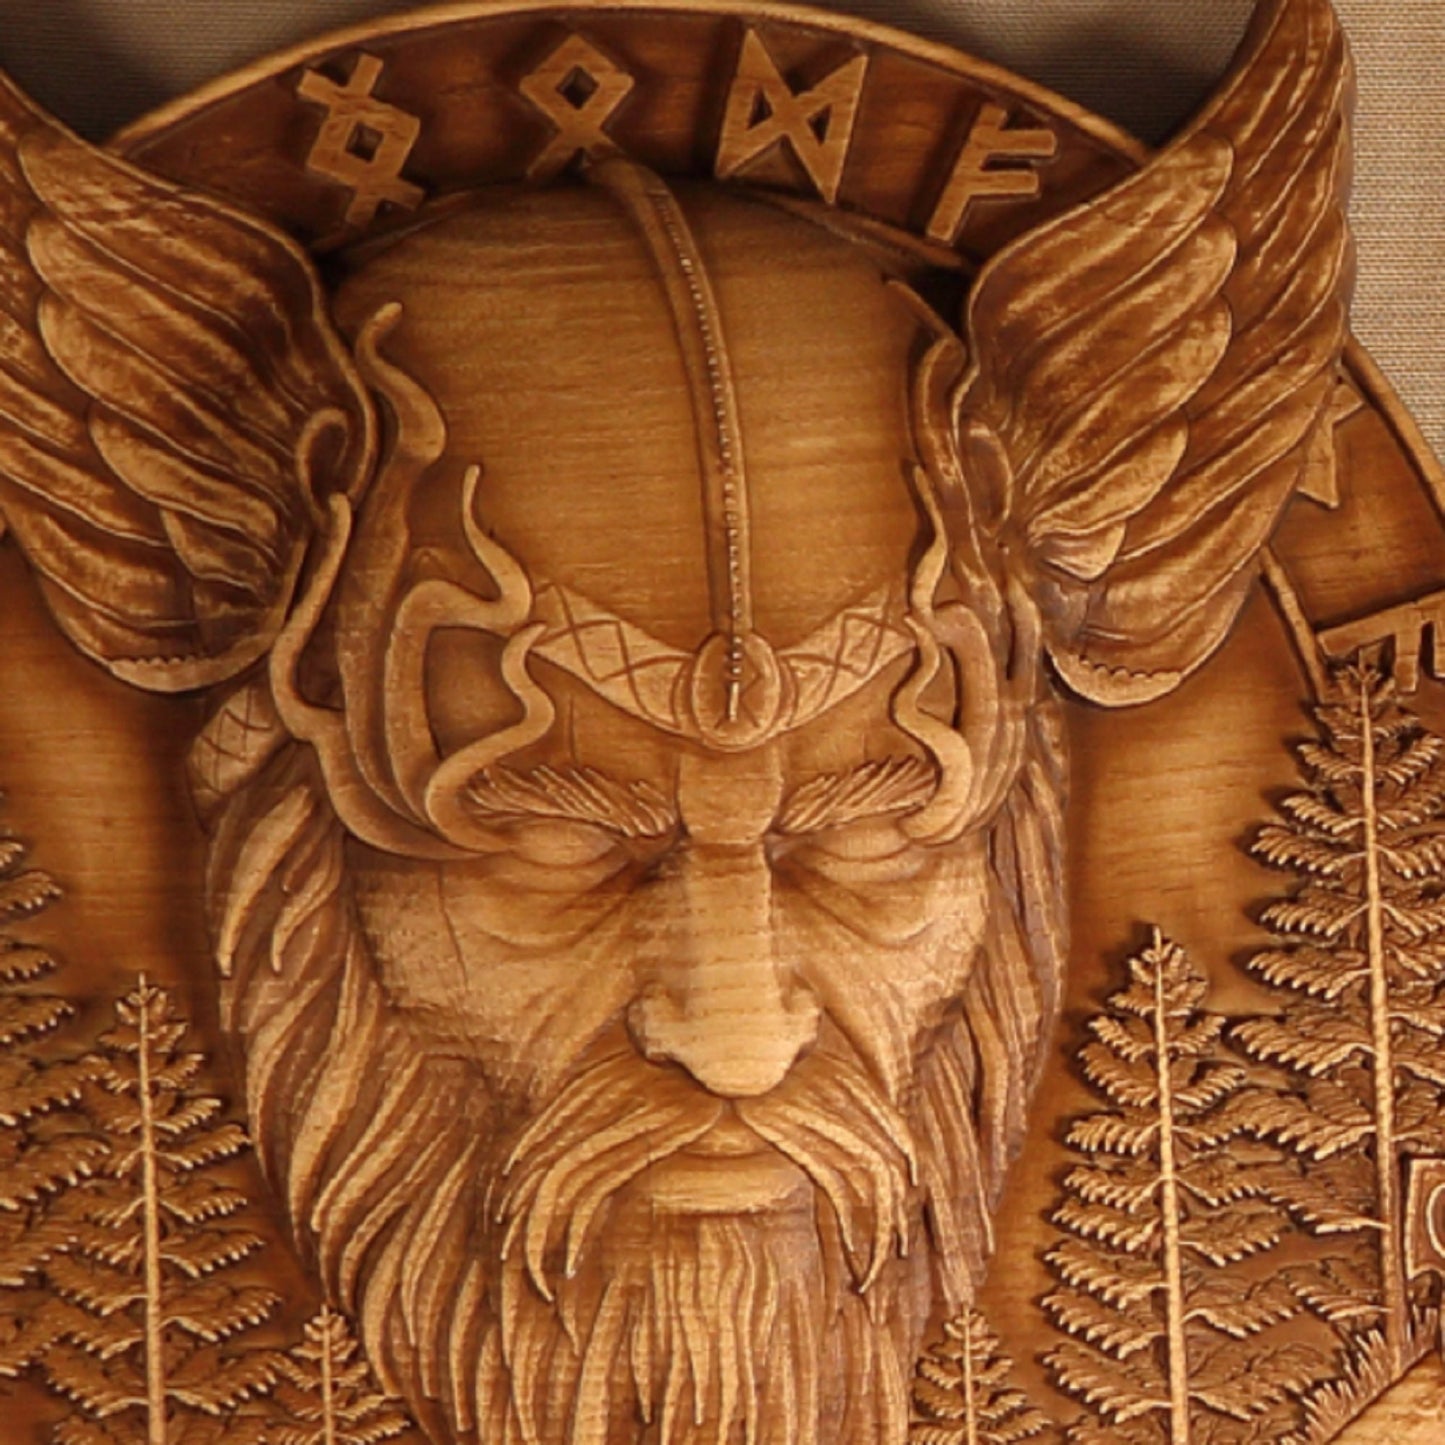 Odin, Viking shield, Viking wooden wall art, wood carving